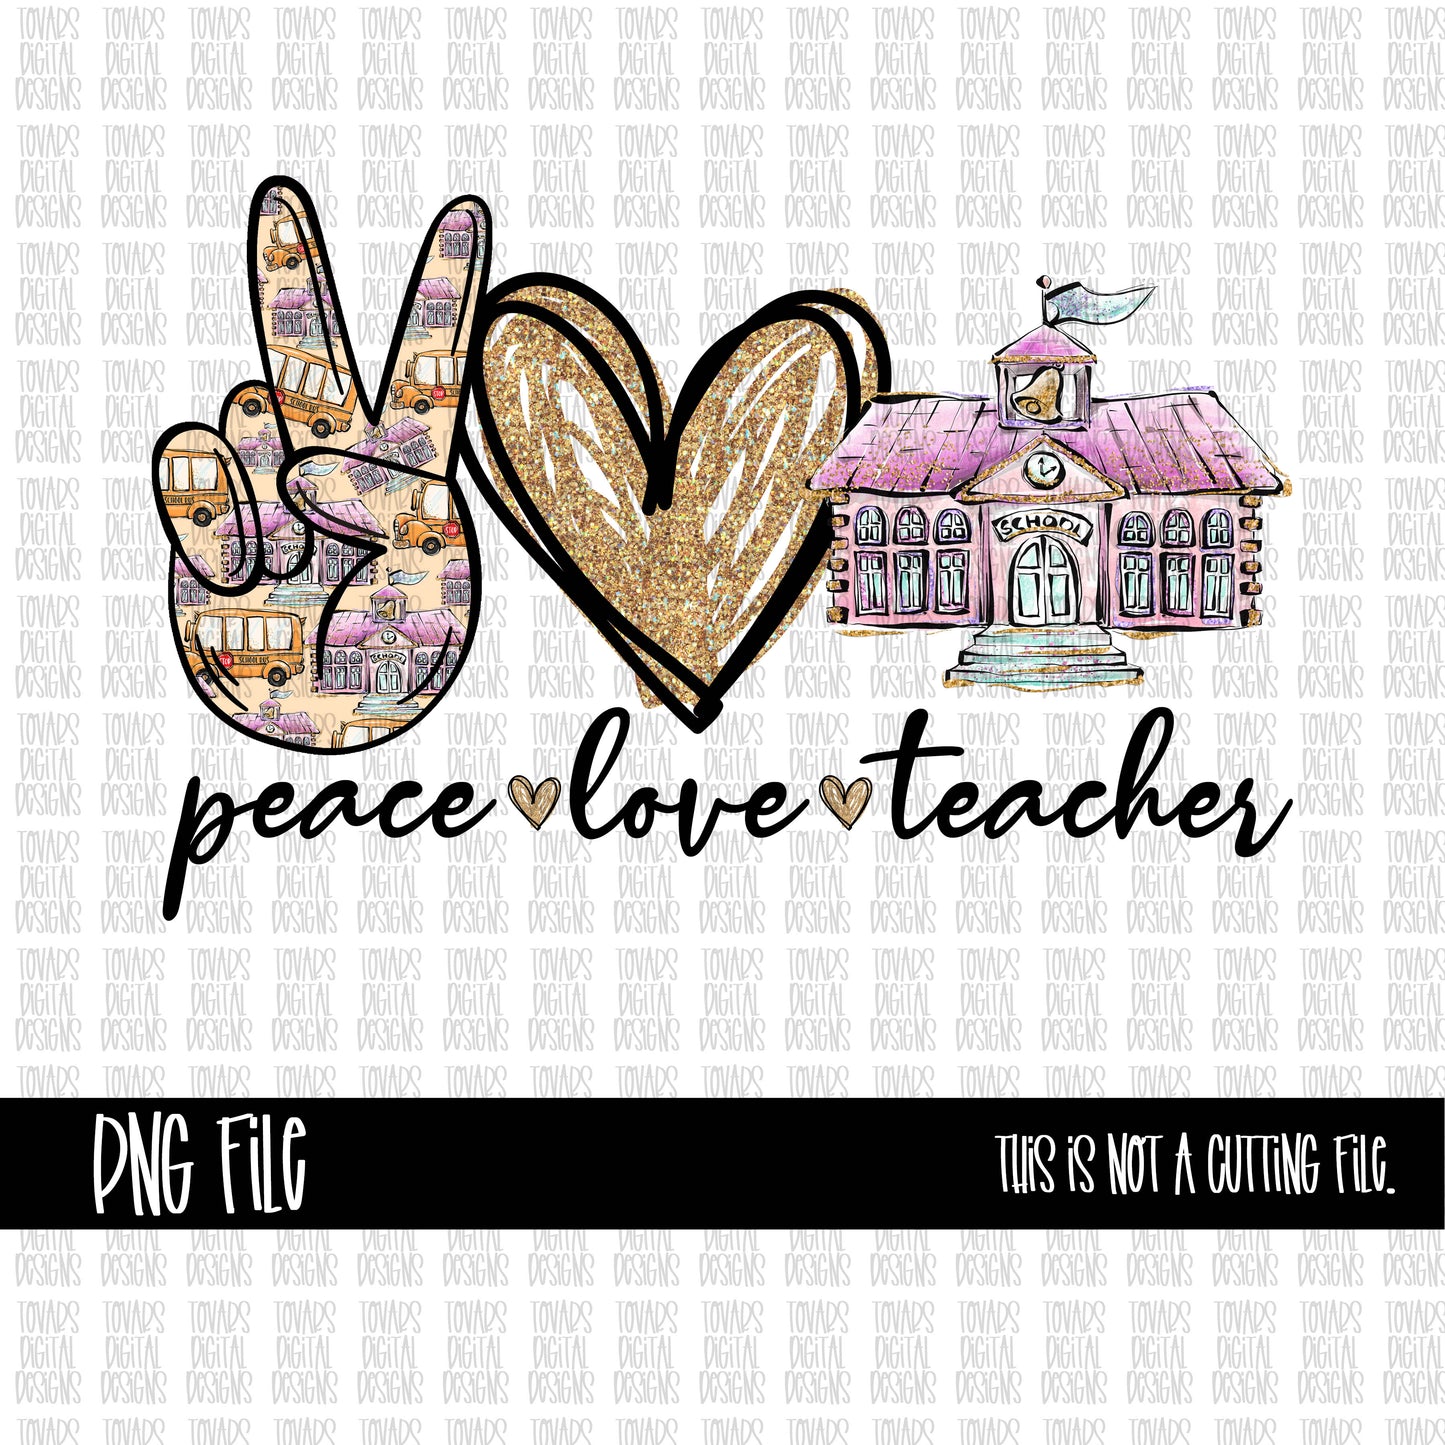 Peace love teacher PNG FILE school design